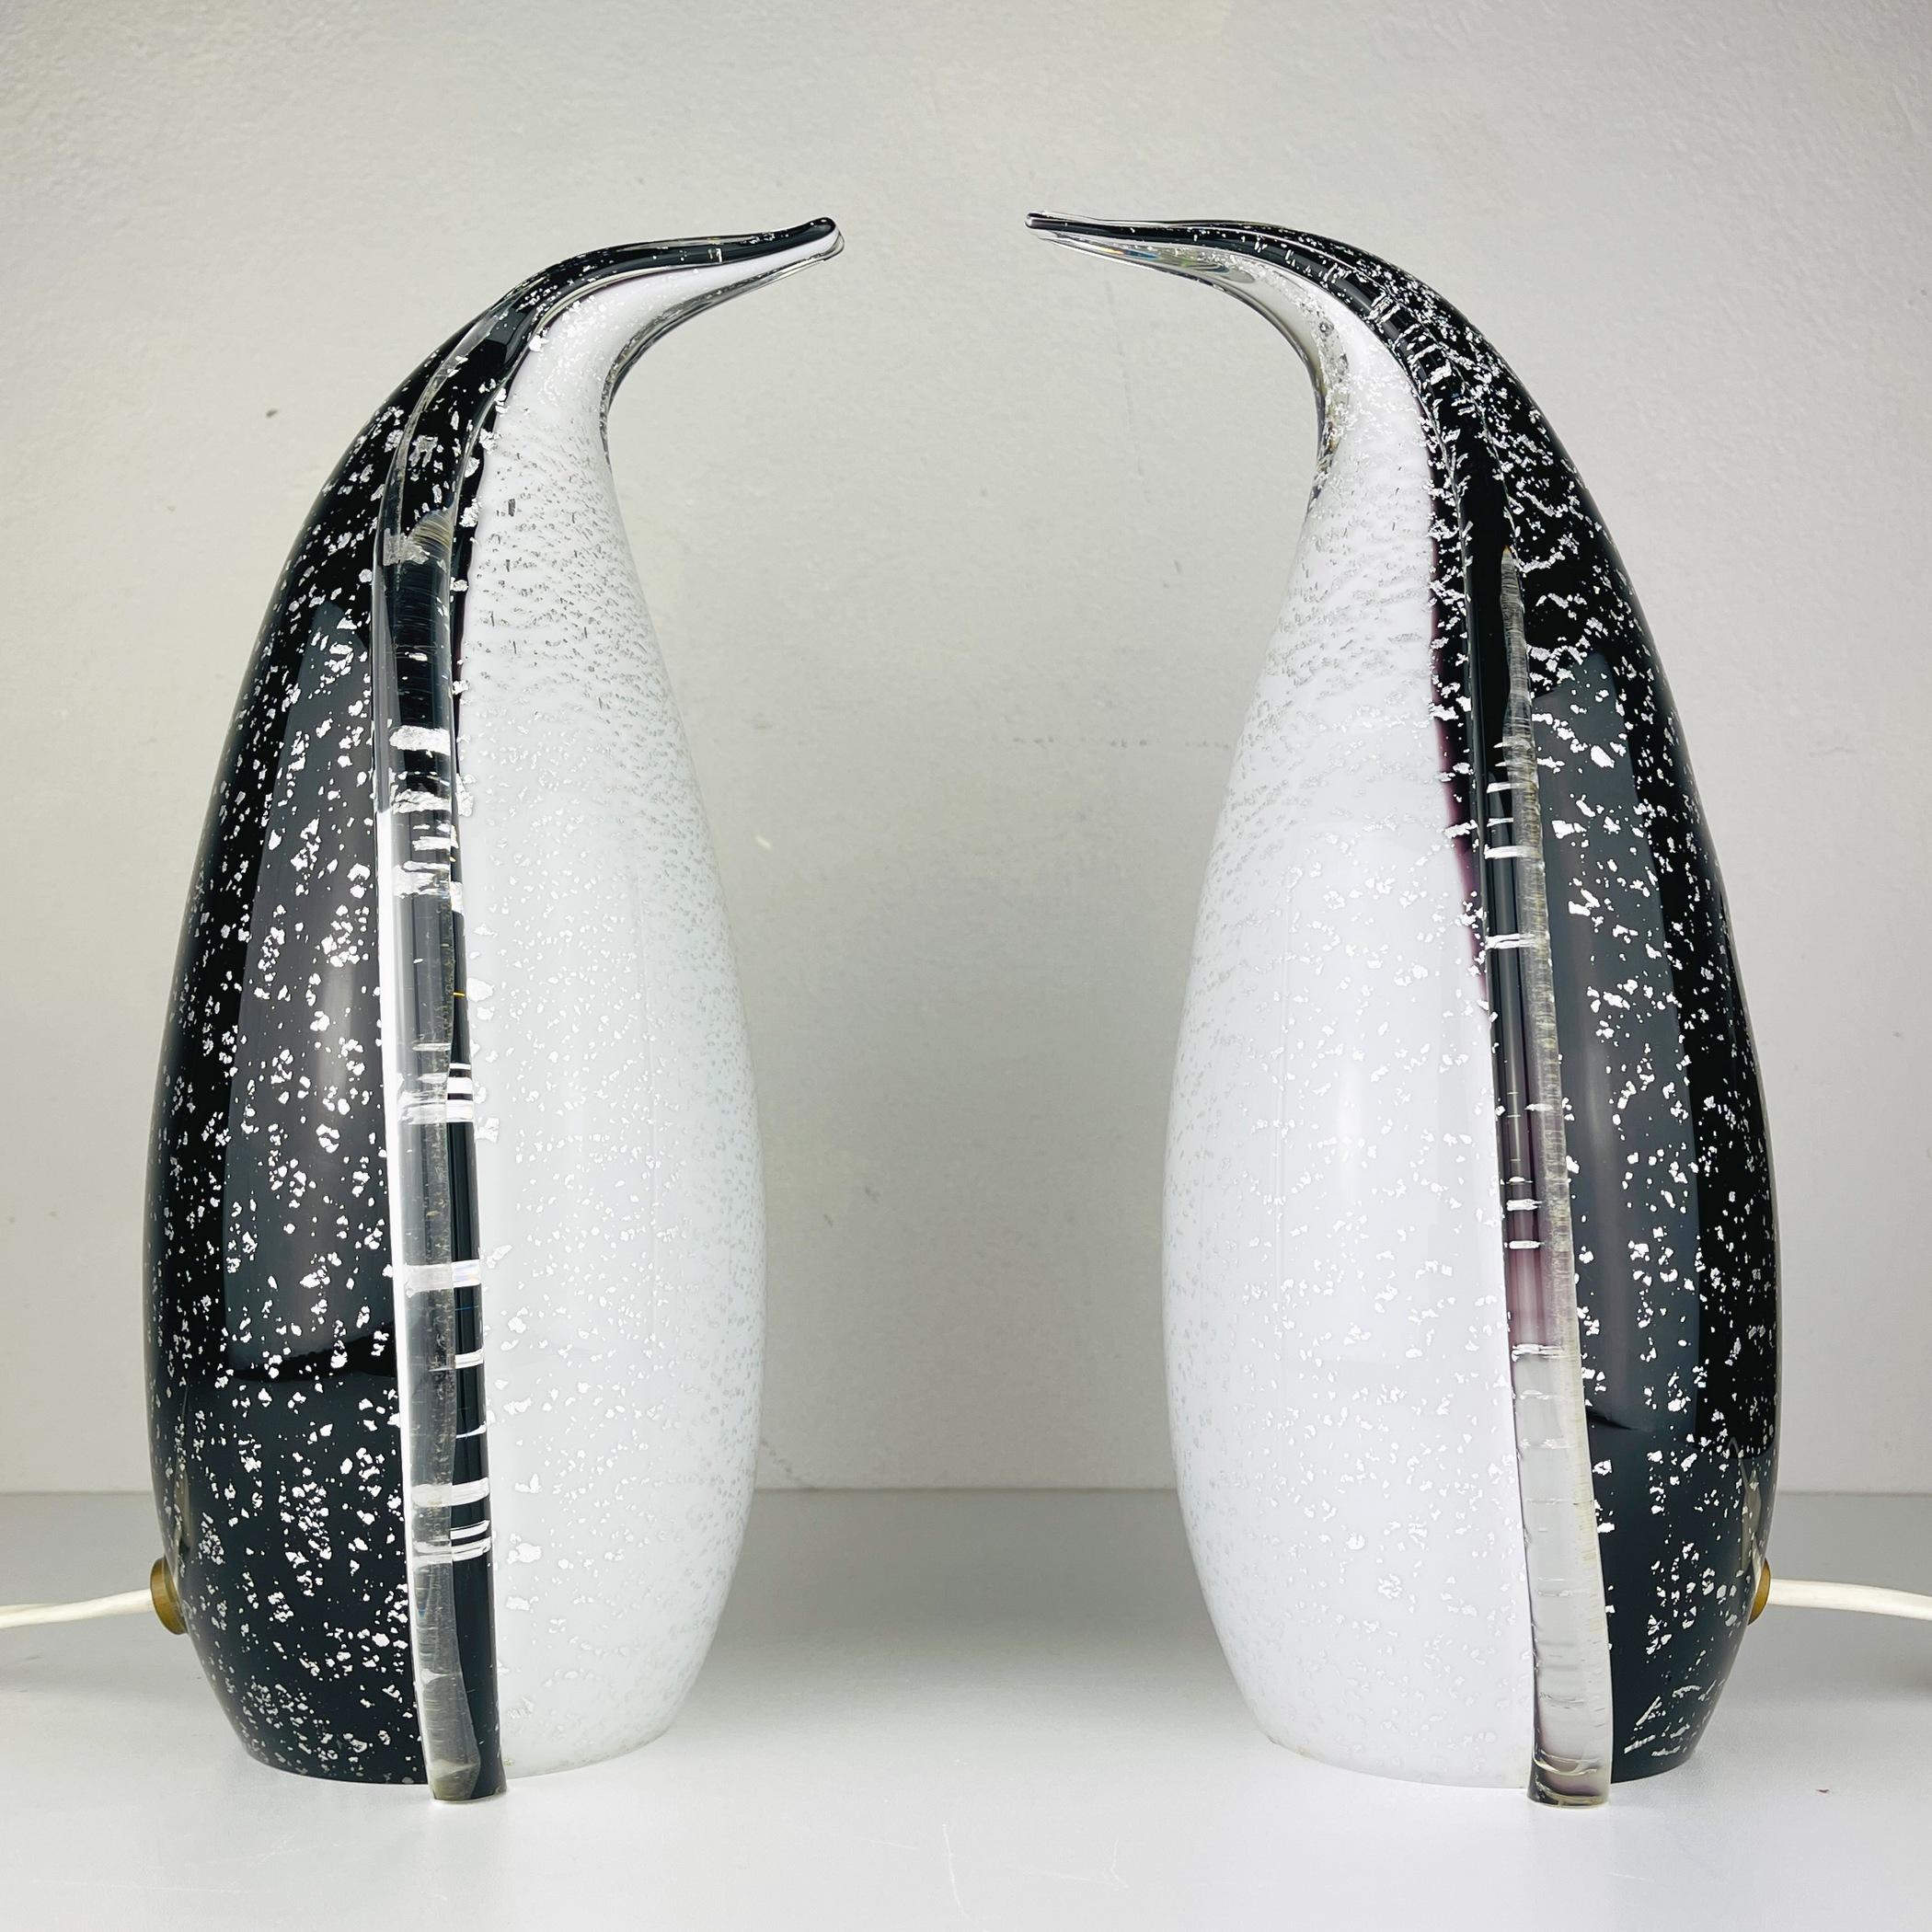 Erstaunlich seltenes Paar Murano Tischlampen Penguin in Italien in den 1980er Jahren gemacht. Die Technik der Lampenherstellung wird Aventurina genannt. Bei dieser Technik werden Metallplättchen in Glas eingebettet, das sich in einem geschmolzenen